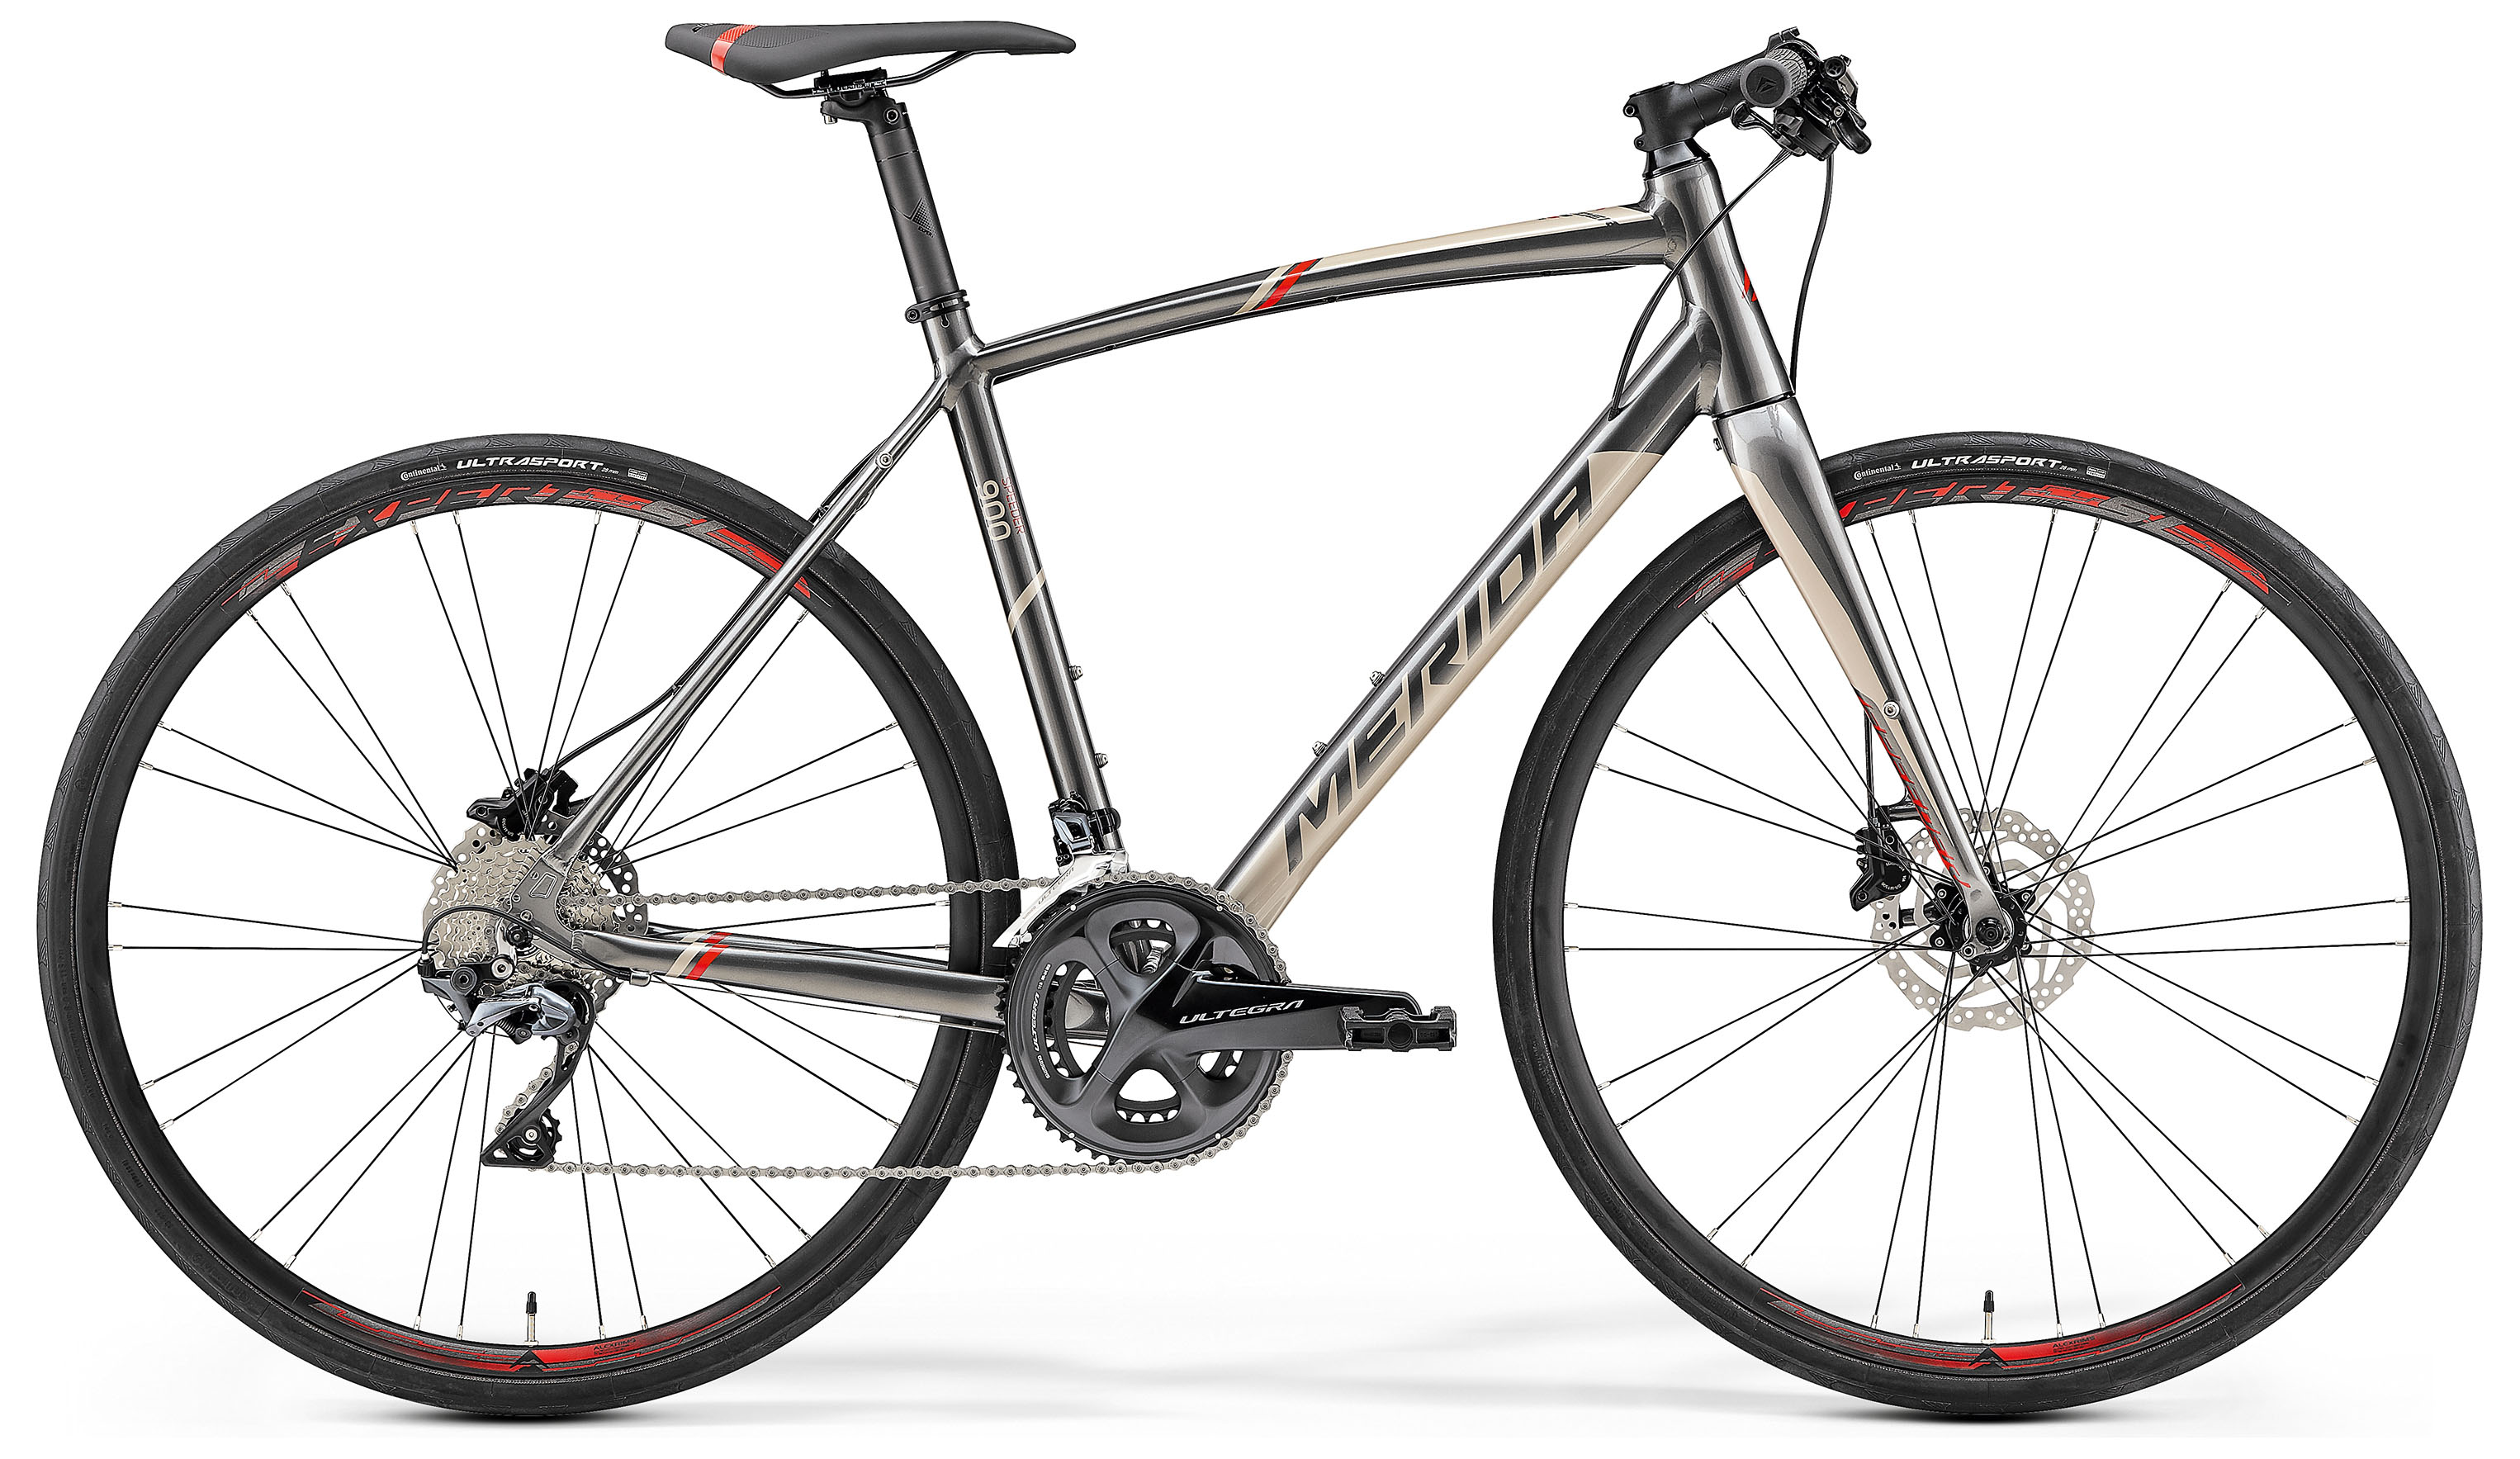  Отзывы о Городском велосипеде Merida Speeder 900 2019